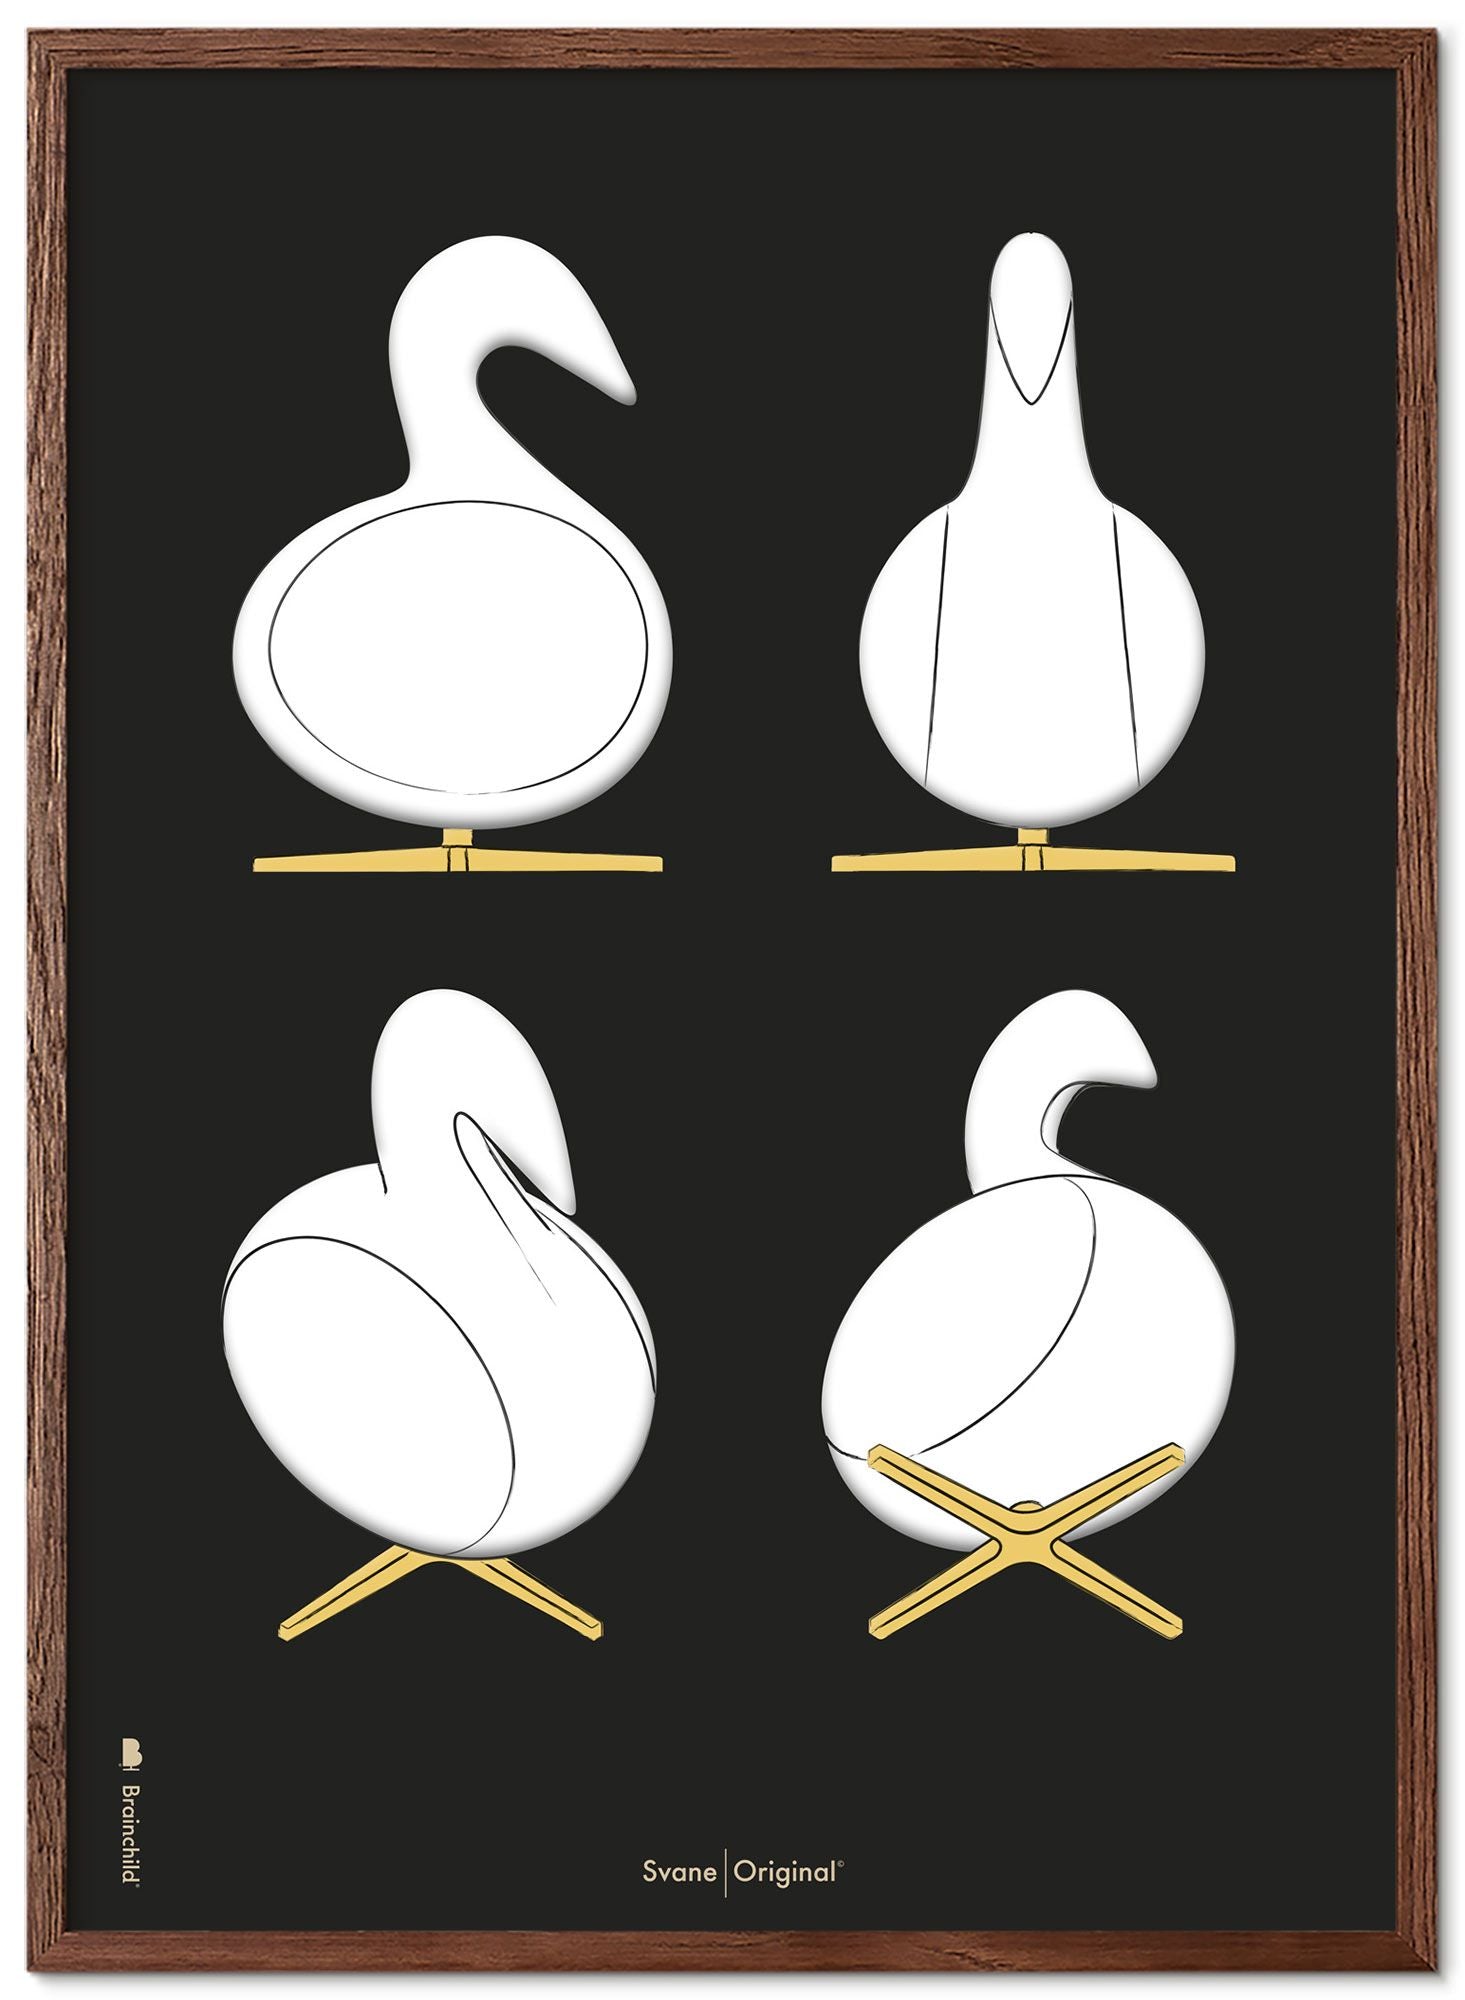 Marco de póster de bocetos de diseño de Swan de creación de madera oscura A5, fondo negro